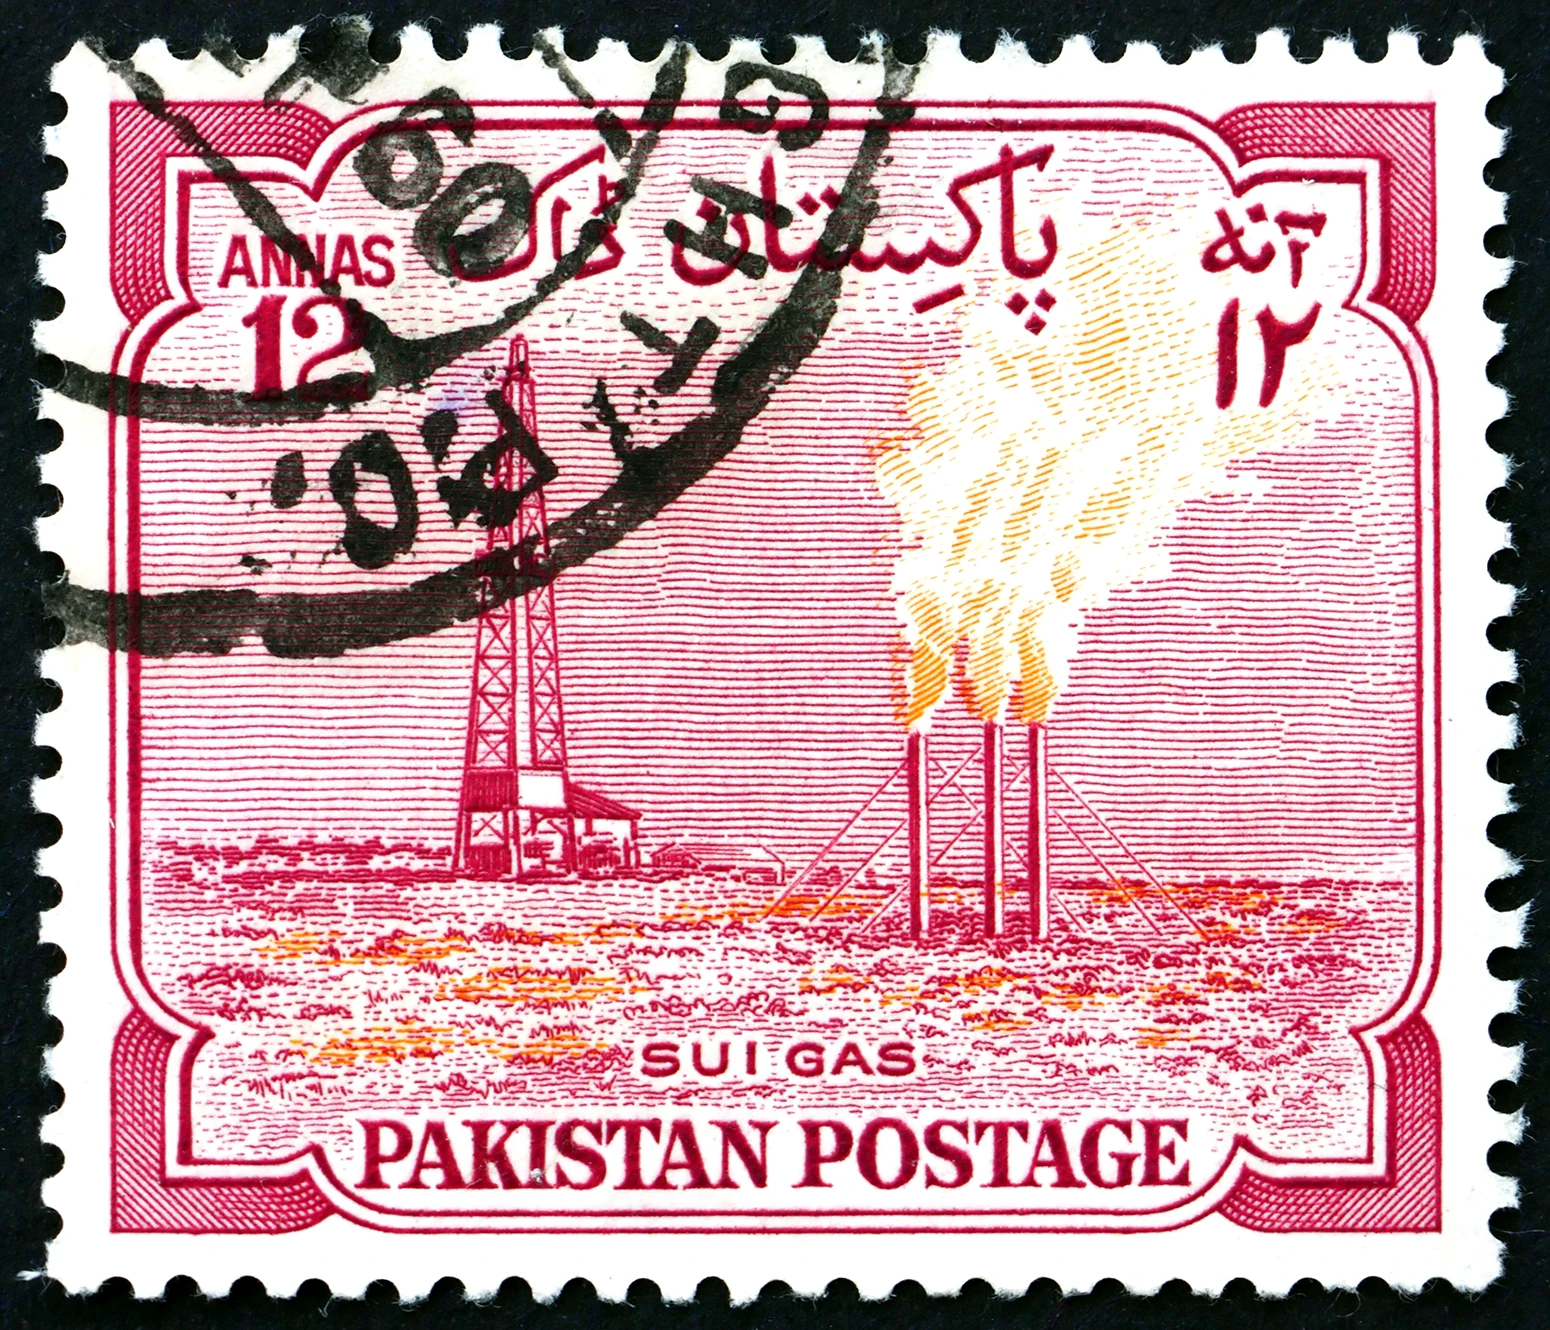 Ett pakistanskt frimärke som visar Sui gasanläggning, cirka 1955.